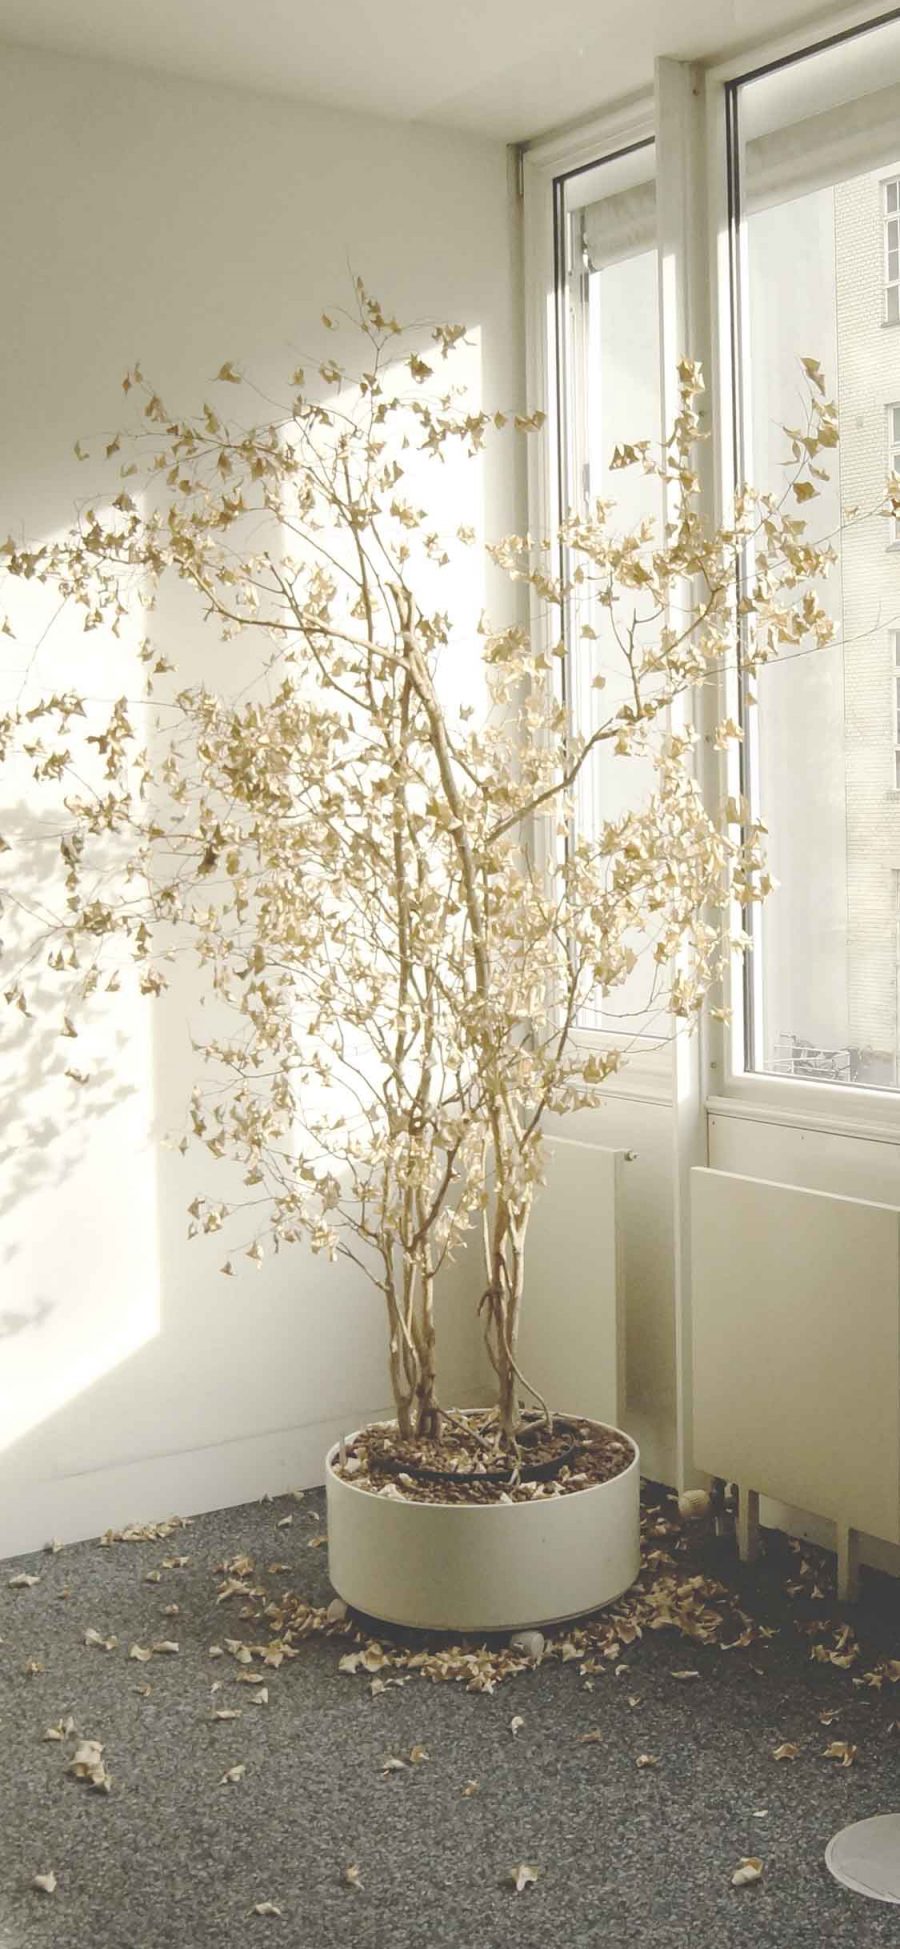 [2436×1125]房间 洁白 阳光 盆栽 凋零 落叶 意境 苹果手机壁纸图片